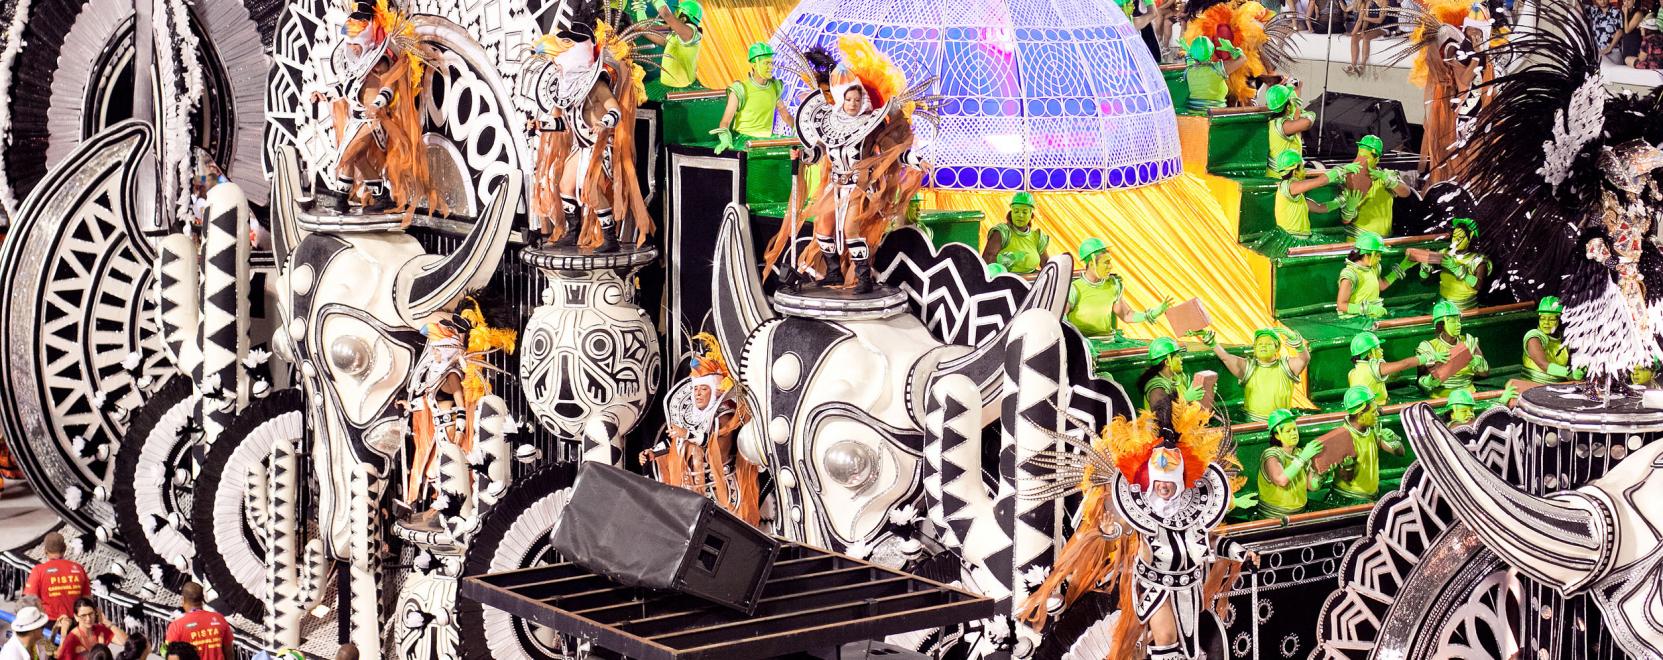 Robotok is színesítik a riói karnevál forgatagát